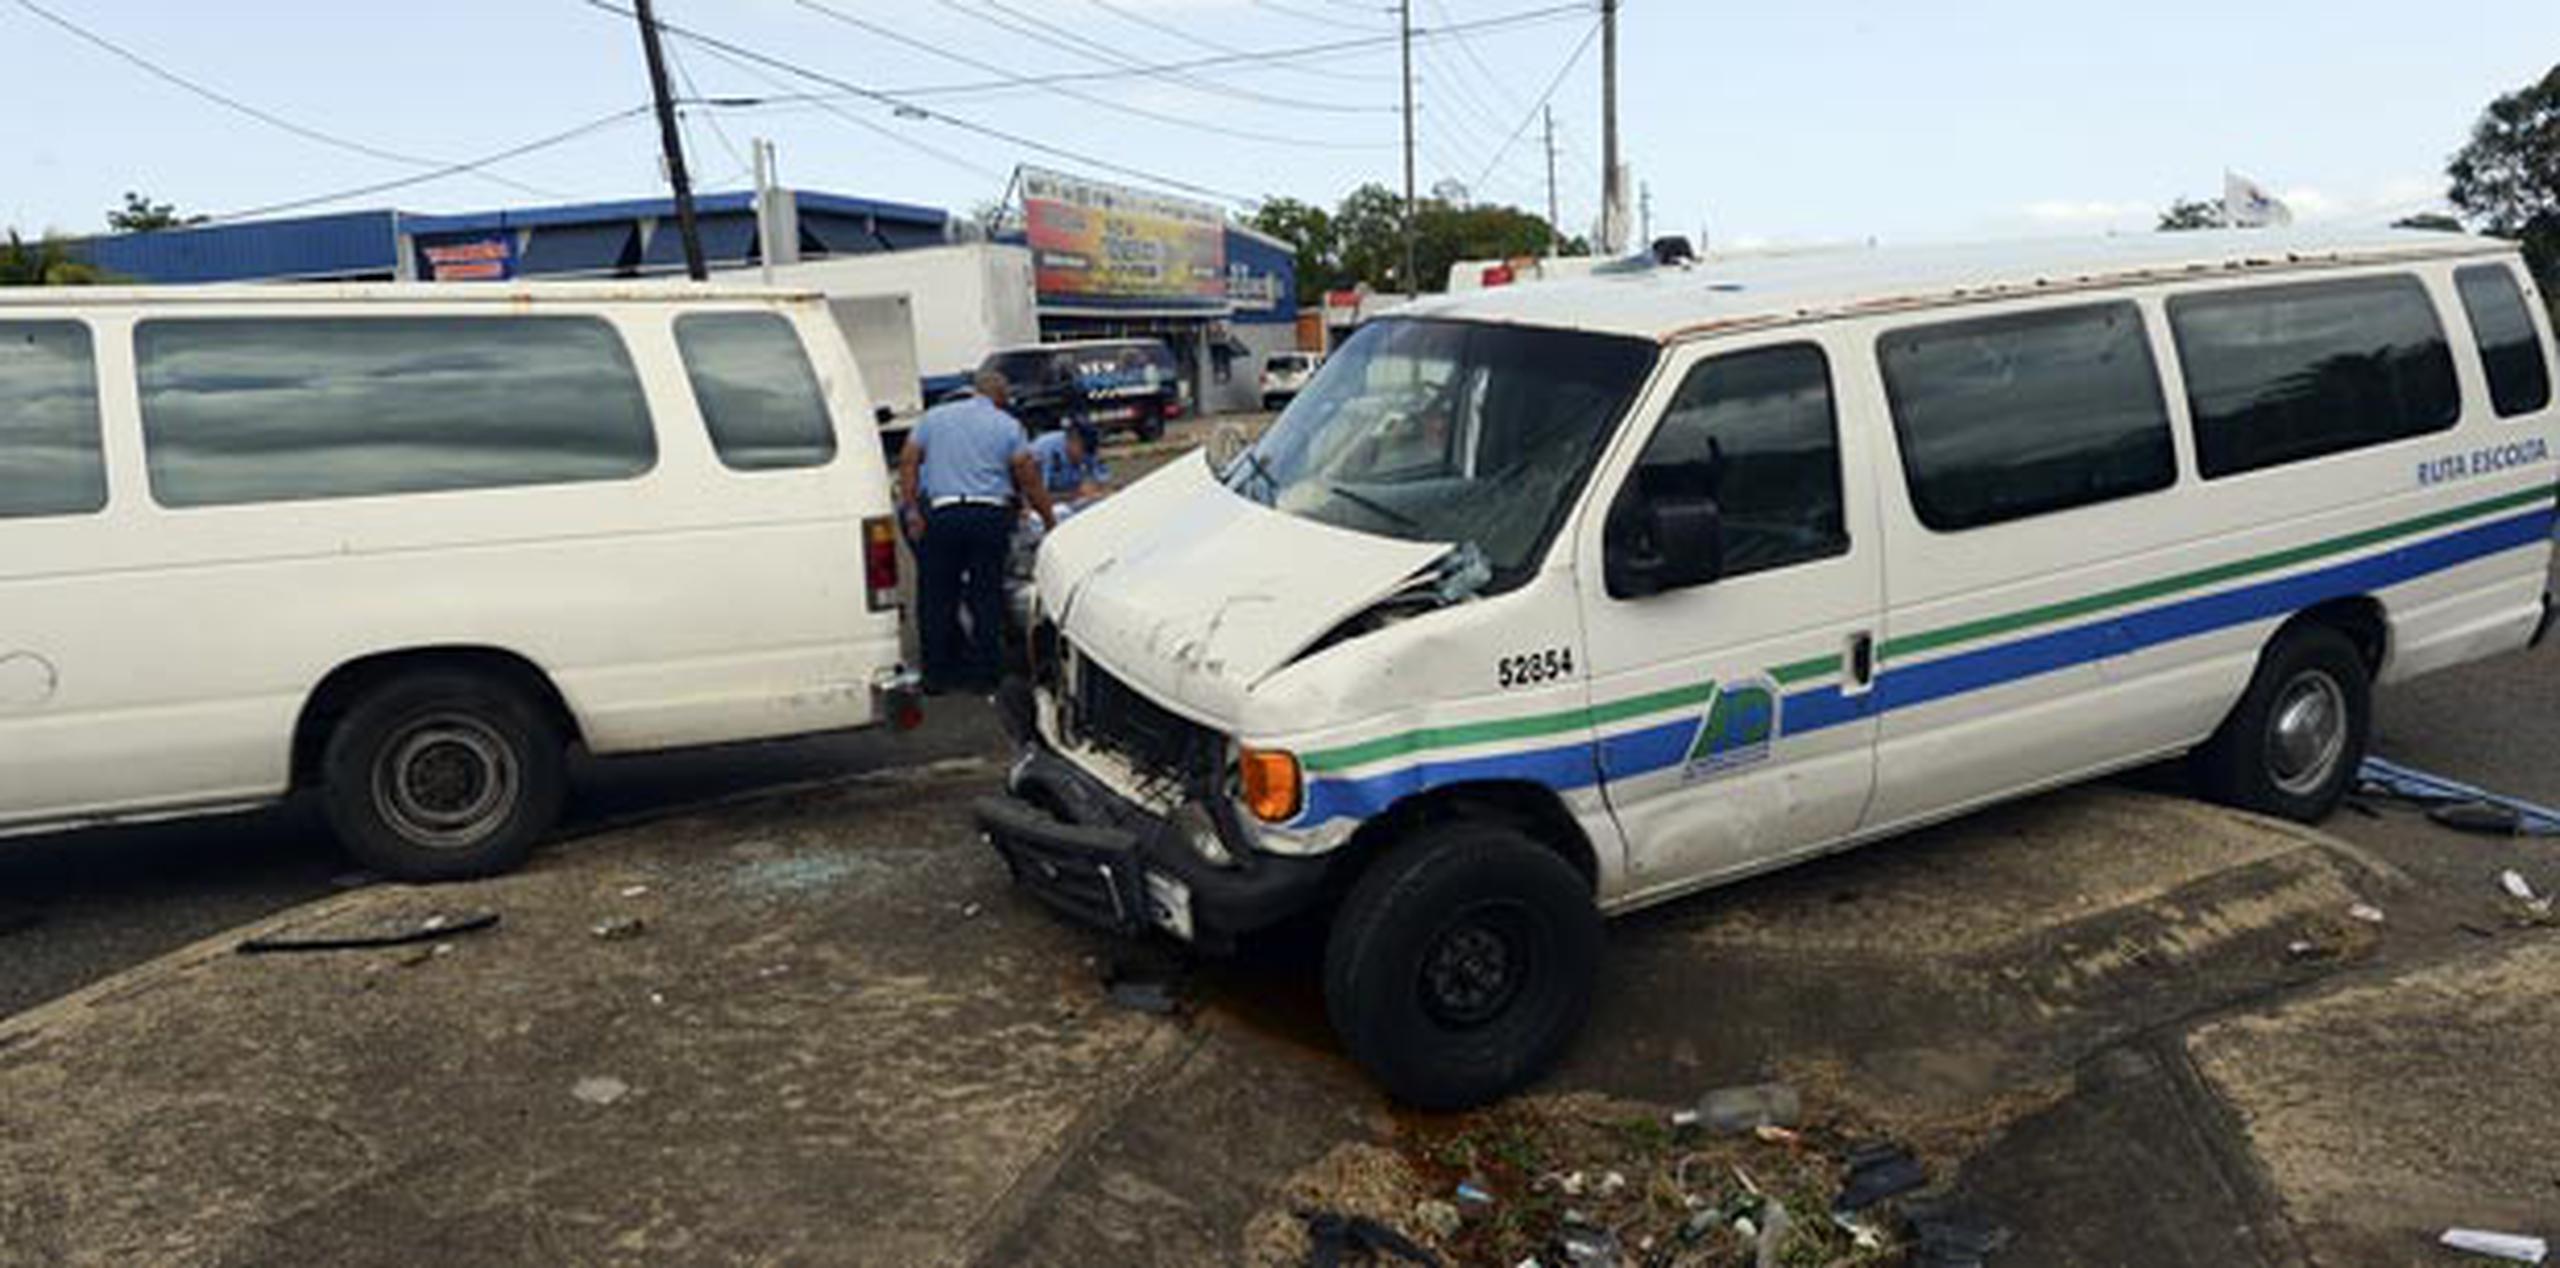 Según informes preliminares suministrados por la Oficina de Prensa de la Policía del área de Arecibo, hay varios confinados heridos y pillados. (andre.kang@gfrmedia.com)